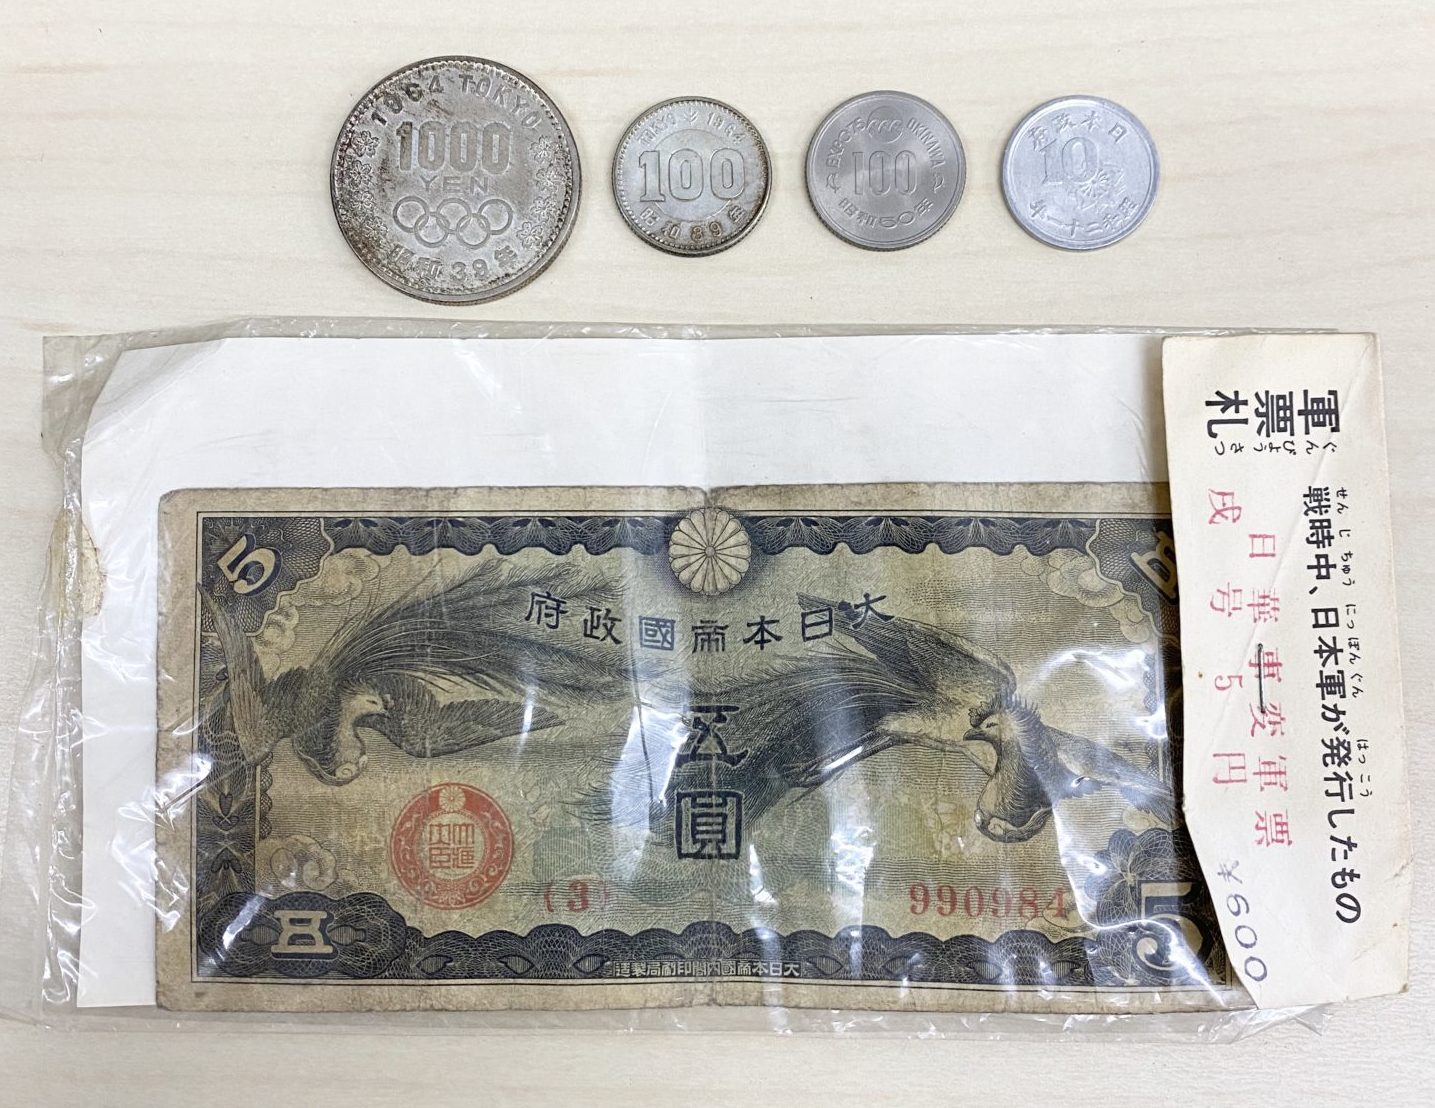 遺品整理時に出てきた1000円コインや戦時中に使われた五圓札